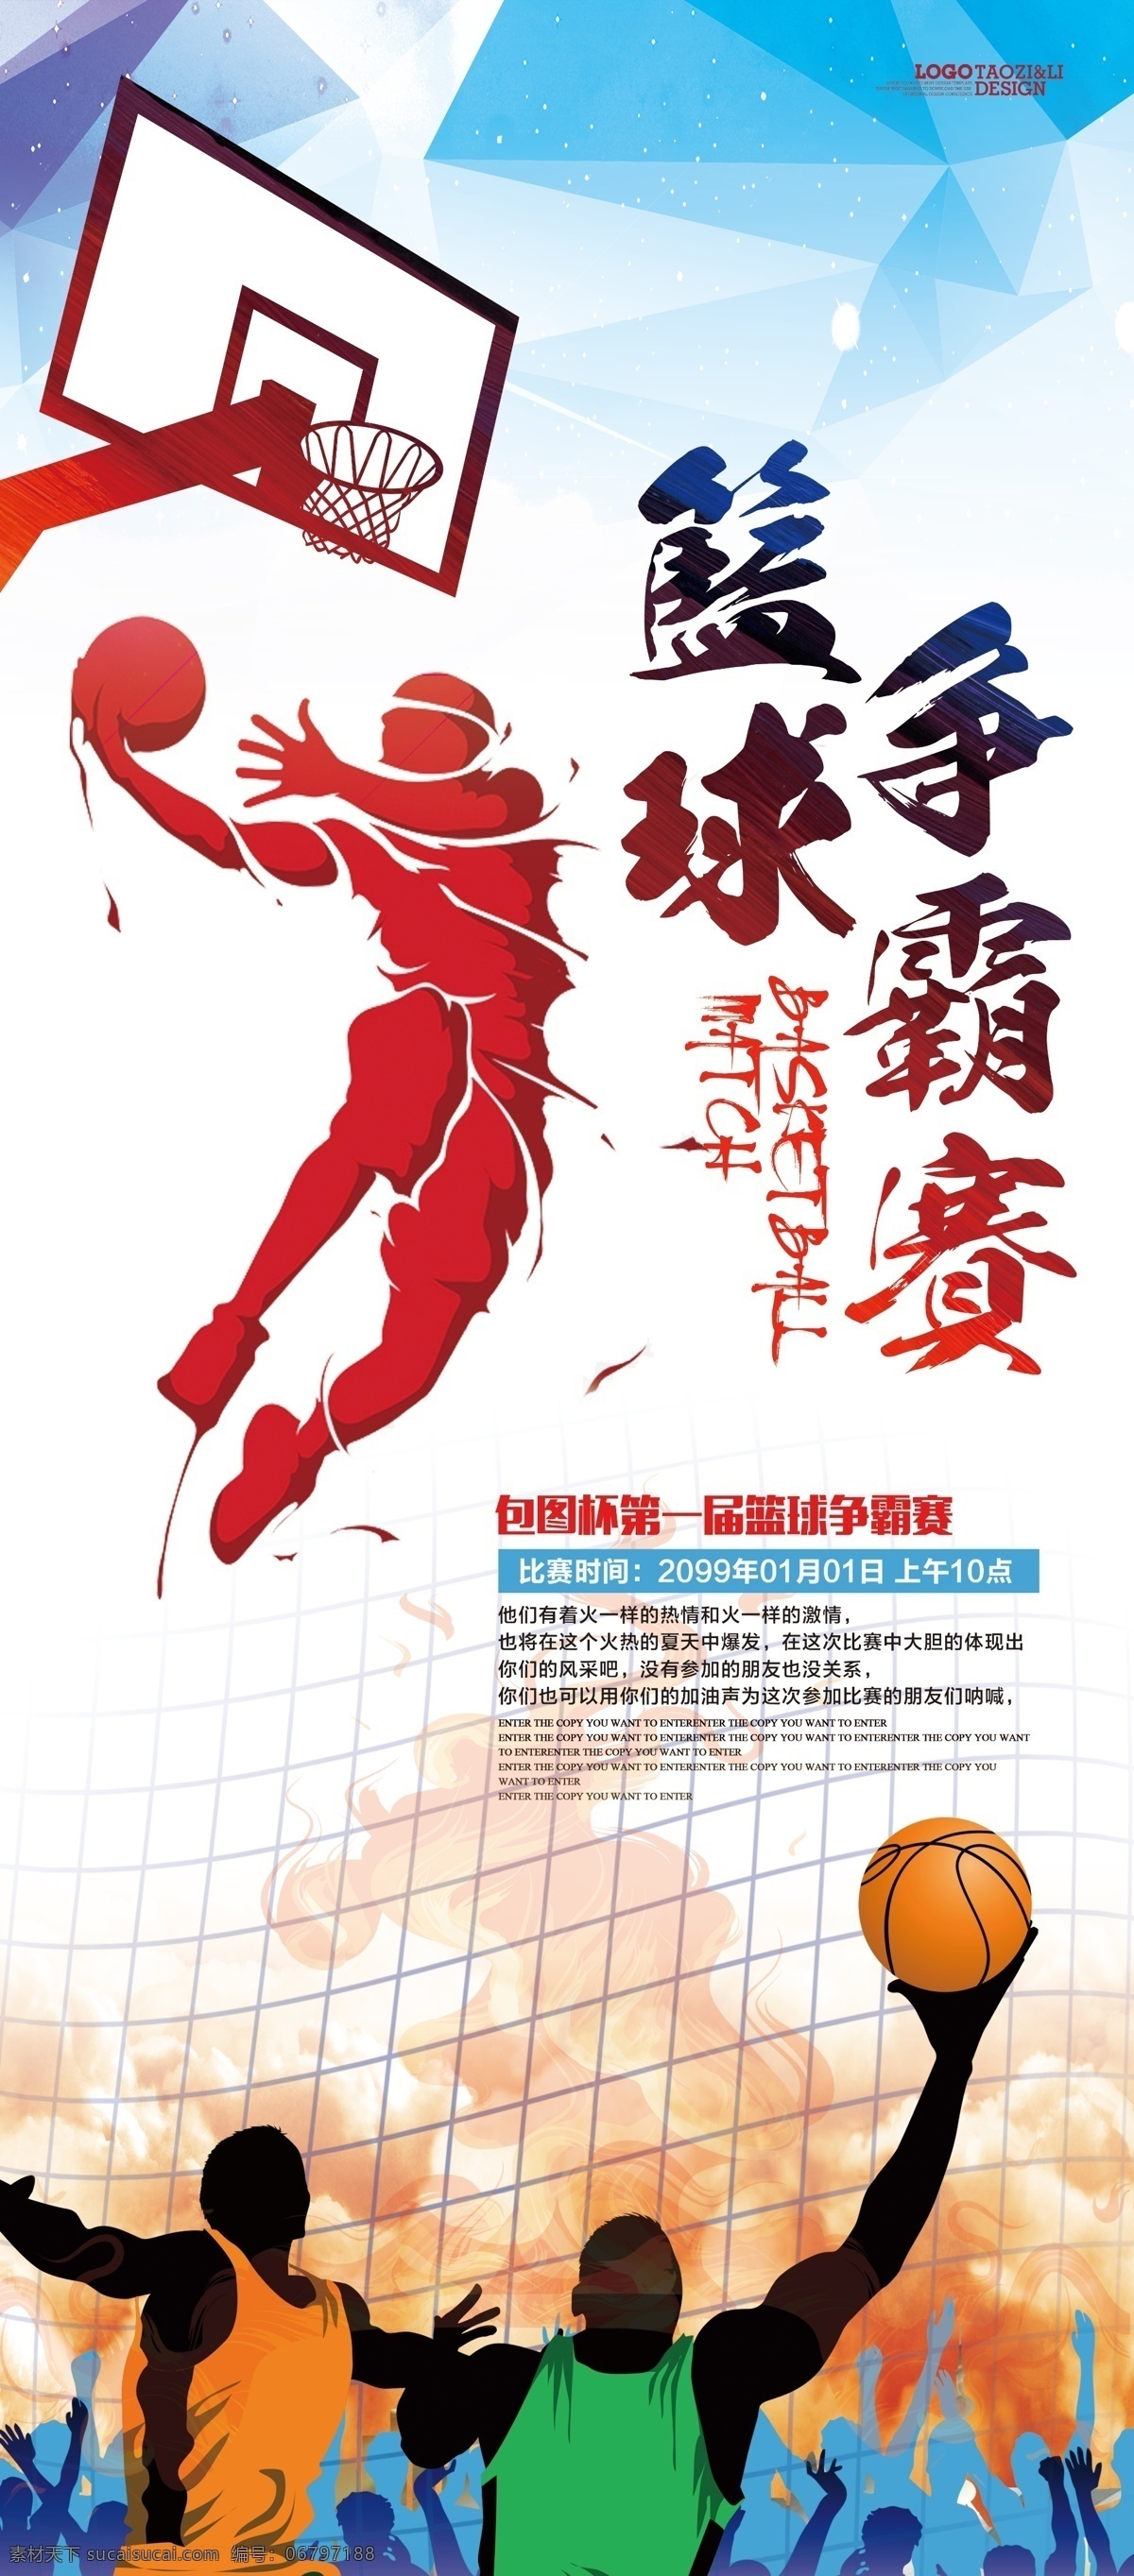 篮球争霸赛 篮球 争霸赛 活动 校园 打篮球 运动 竞技 展架 海报 宣传 公益 健身 展板模板